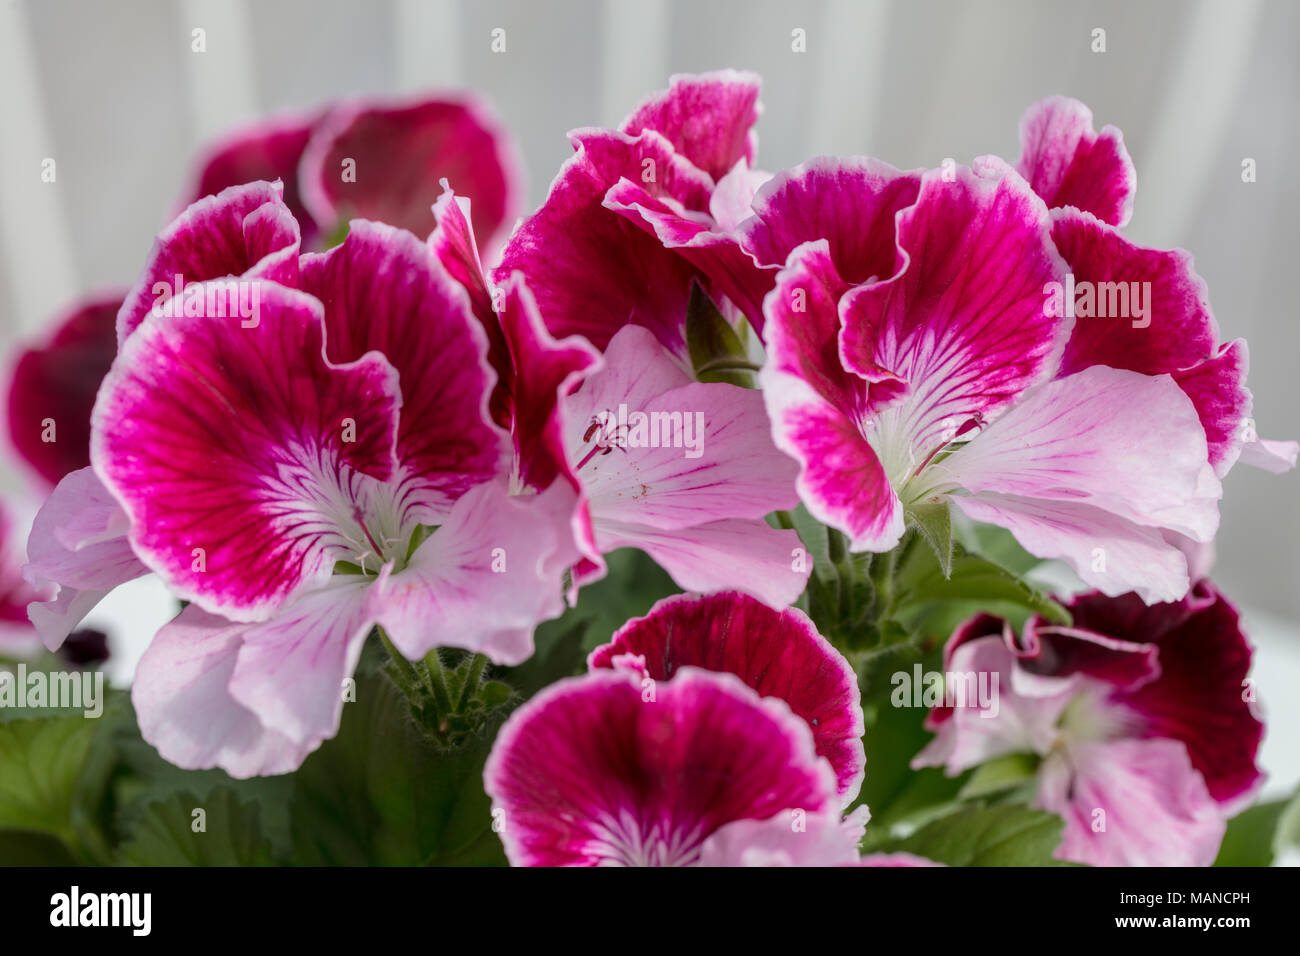 Regal geranium, Engelsk pelargon (Pelargonium x domesticum) Stock Photo